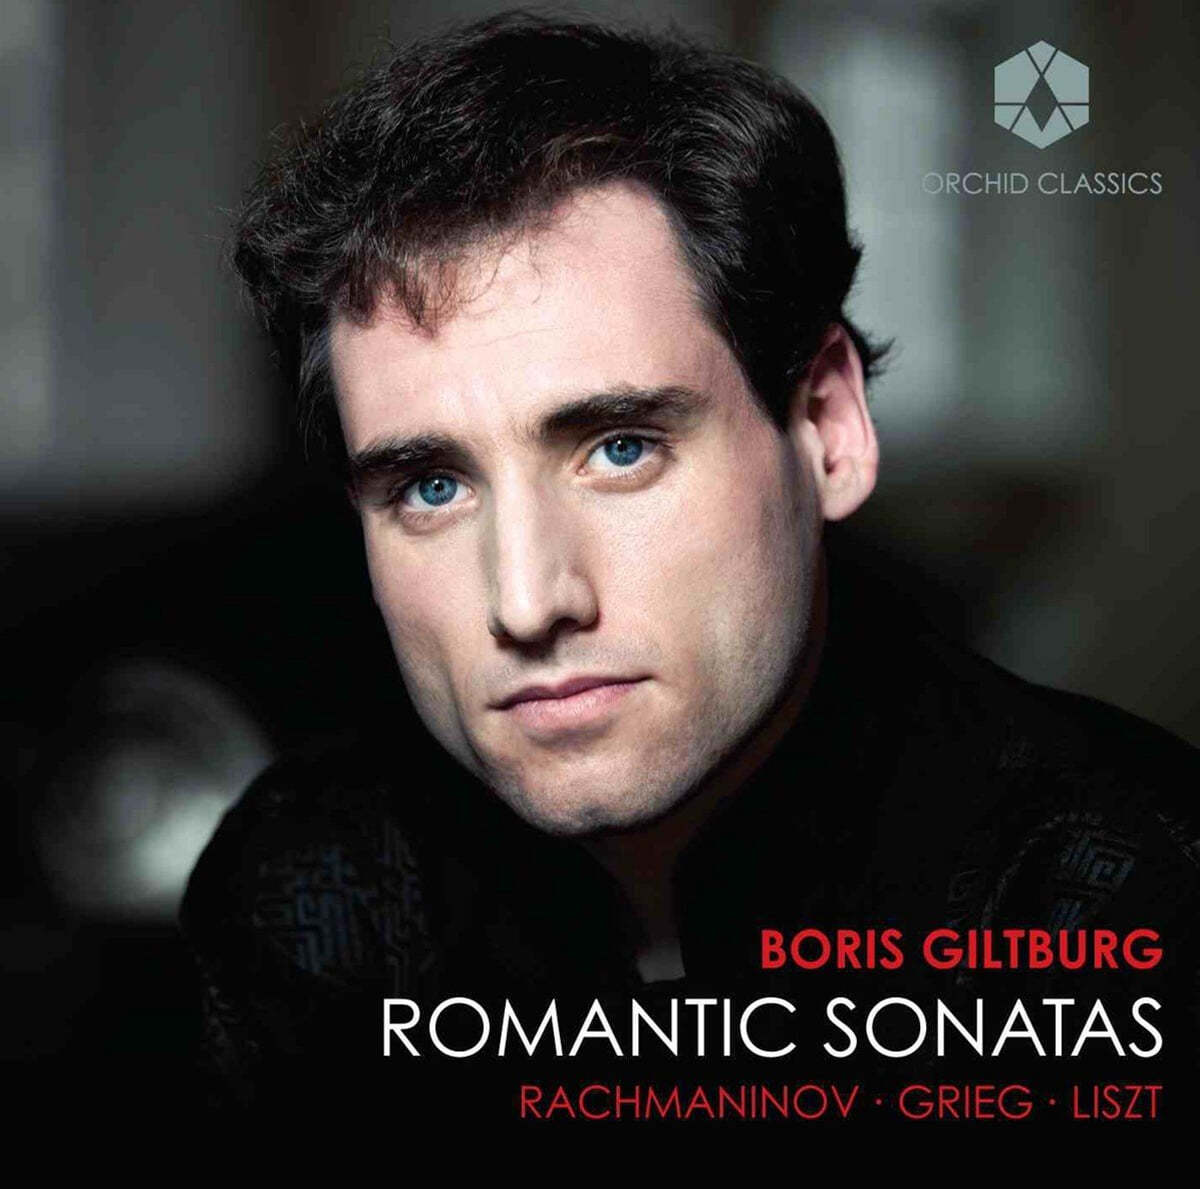 Boris Giltburg 라흐마니노프 / 그리그 / 리스트 : 피아노 소나타 - 보리스 길트버그 (Romantic Sonatas)